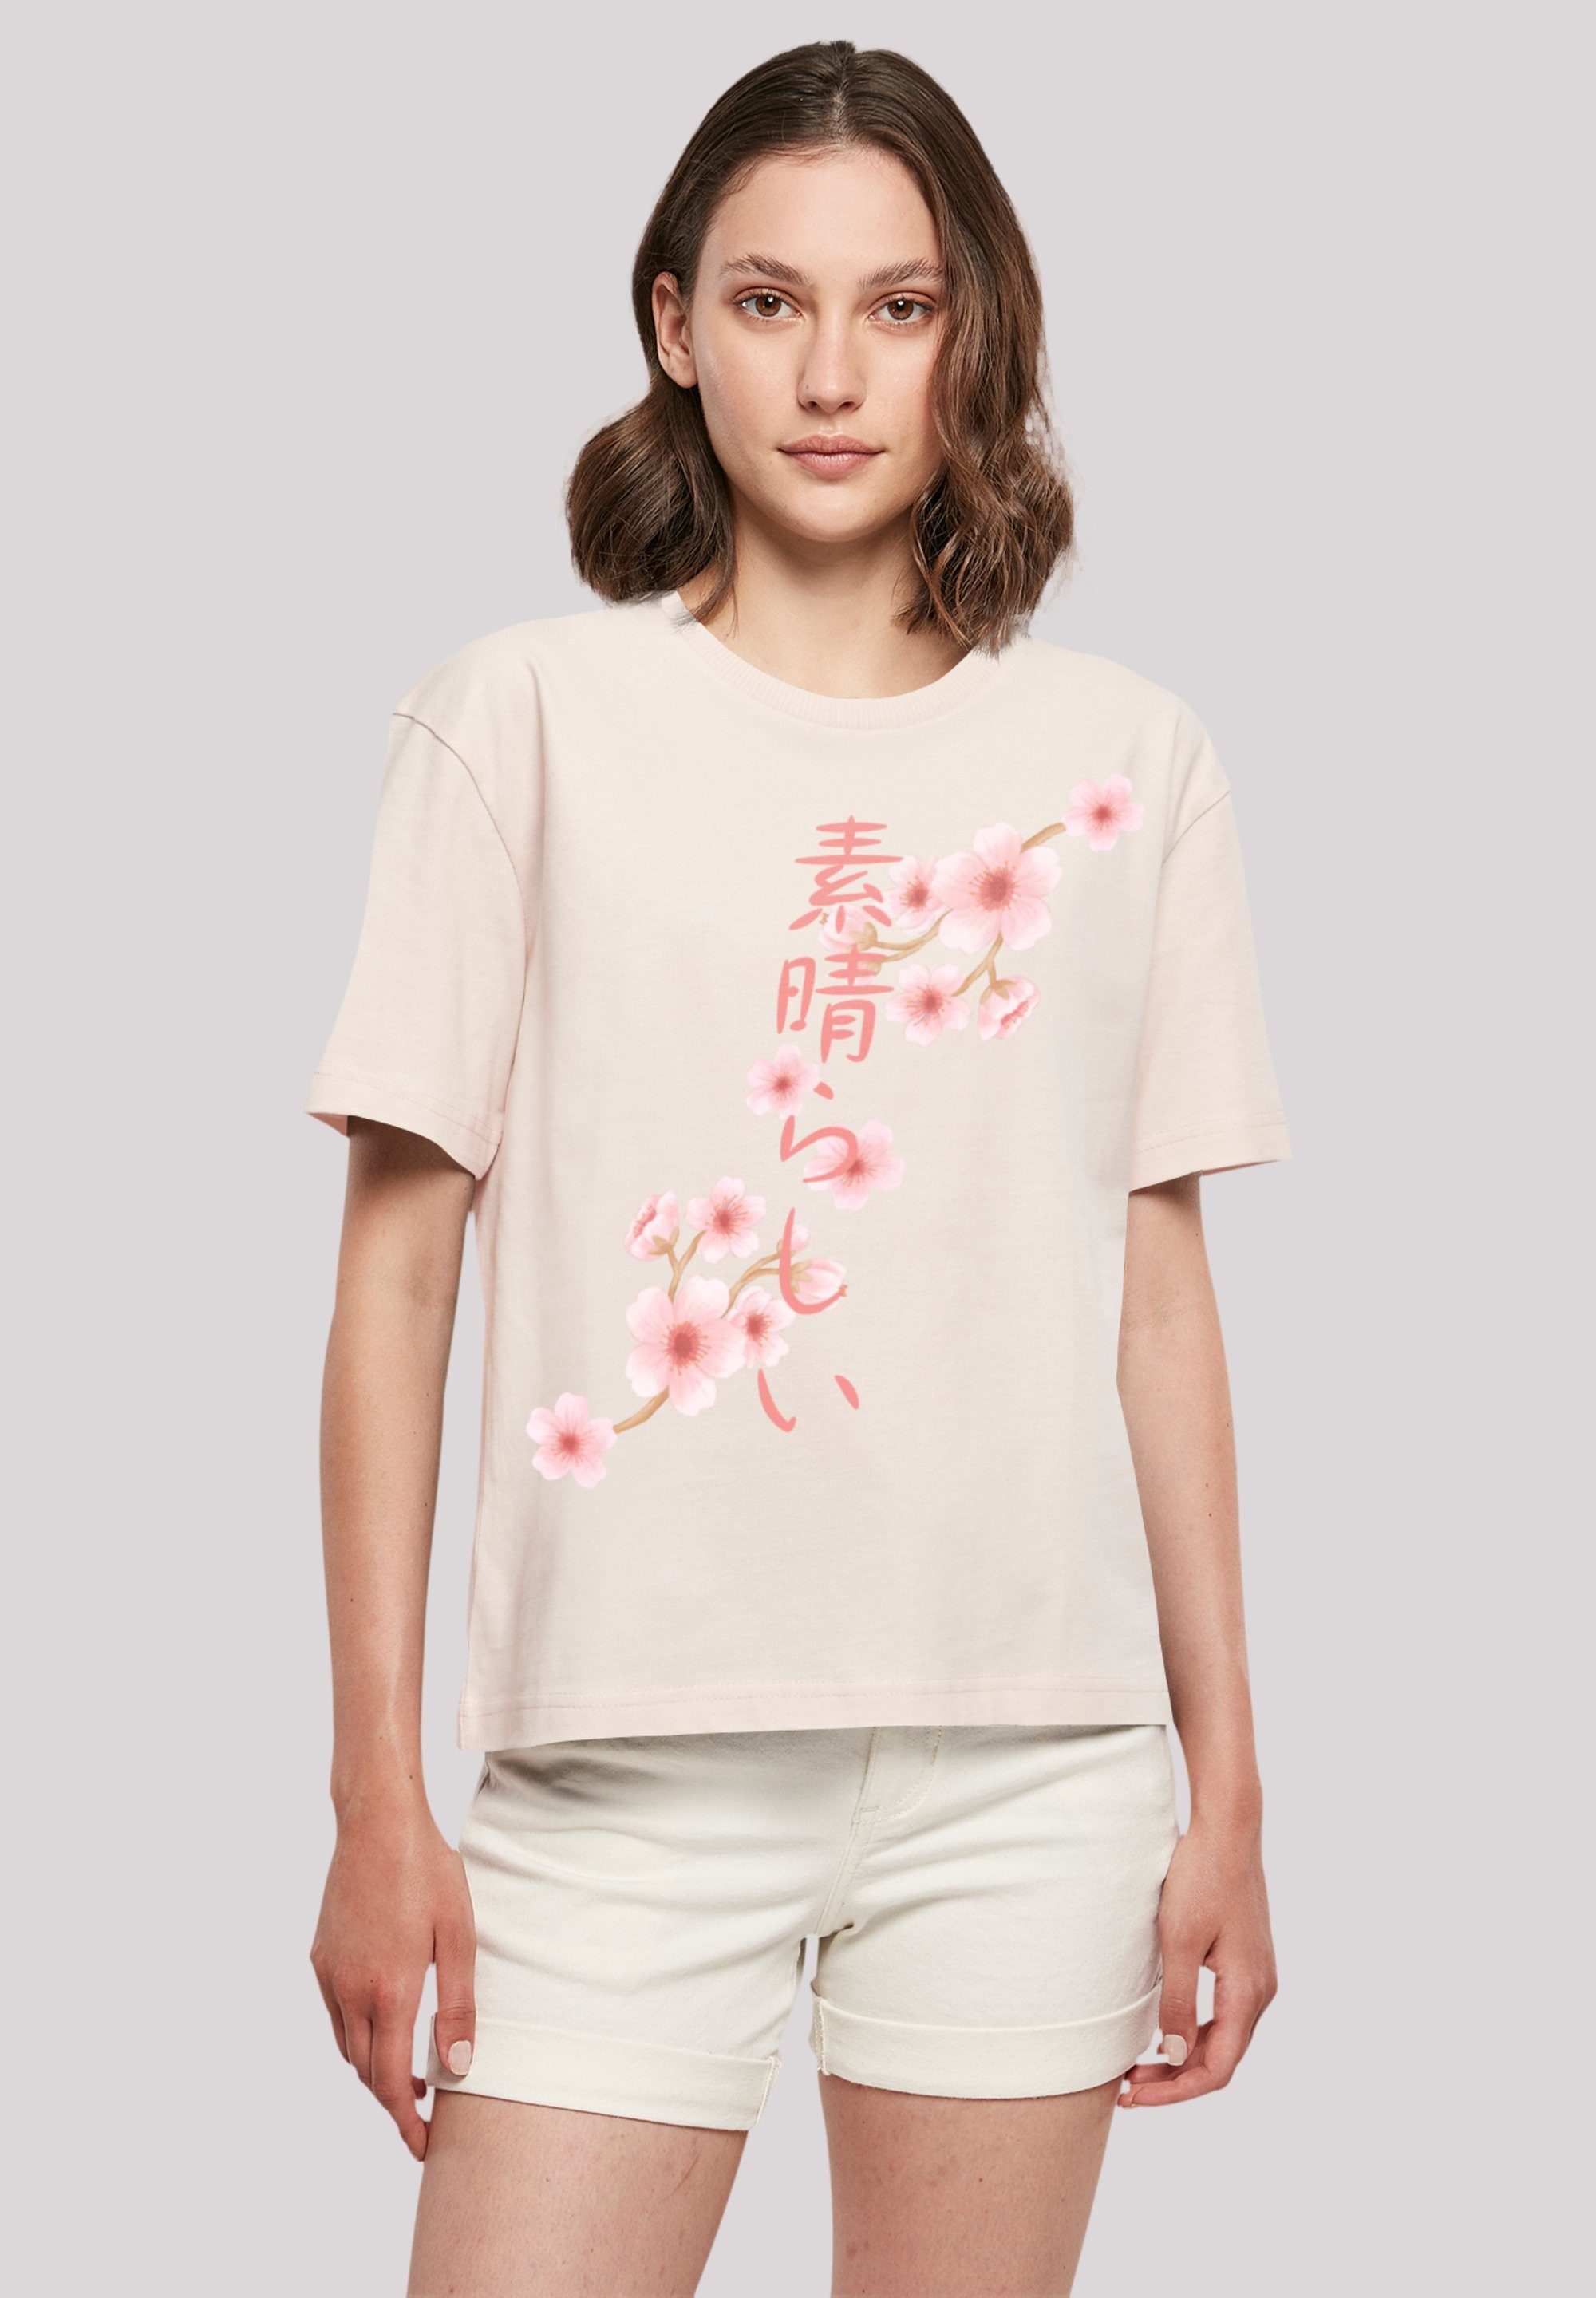 Kirschblüten Rundhalsausschnitt Print, für F4NT4STIC T-Shirt stylischen Gerippter Look